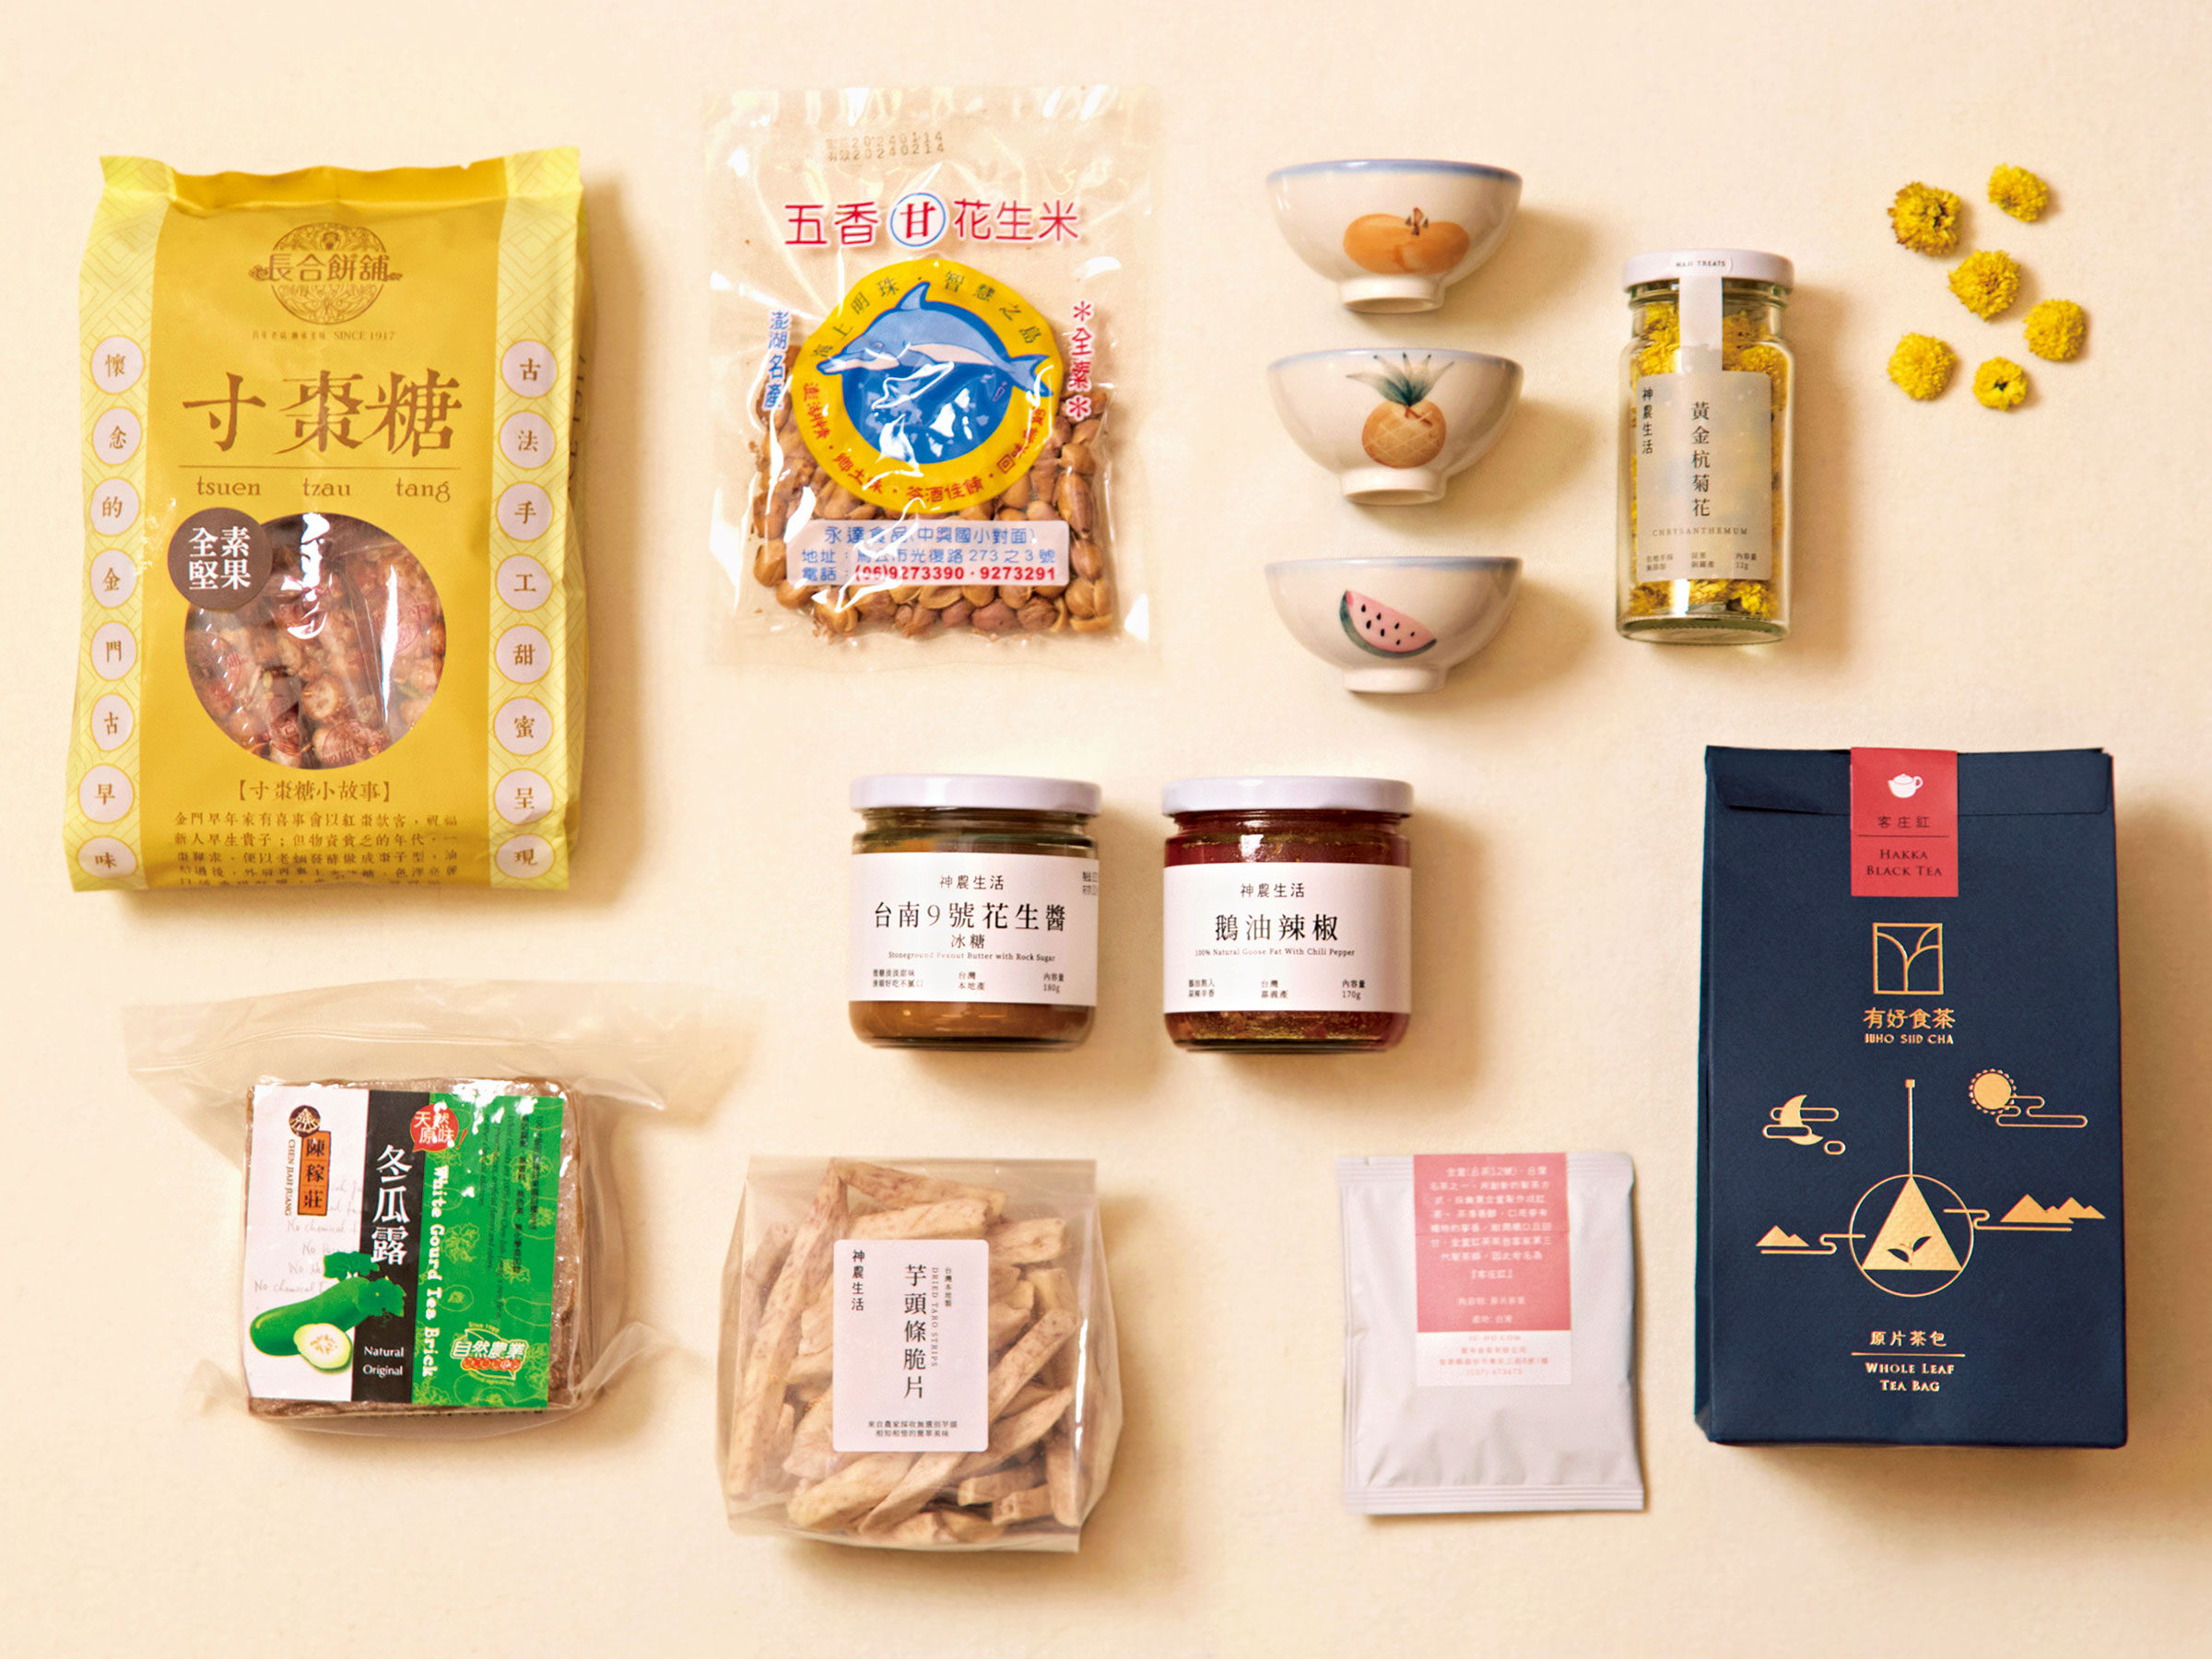 台湾の食雑貨の宝庫「神農生活」には何がある？ 菊のお茶、ガチョウ油、果物のイラストが可愛いお椀まで…